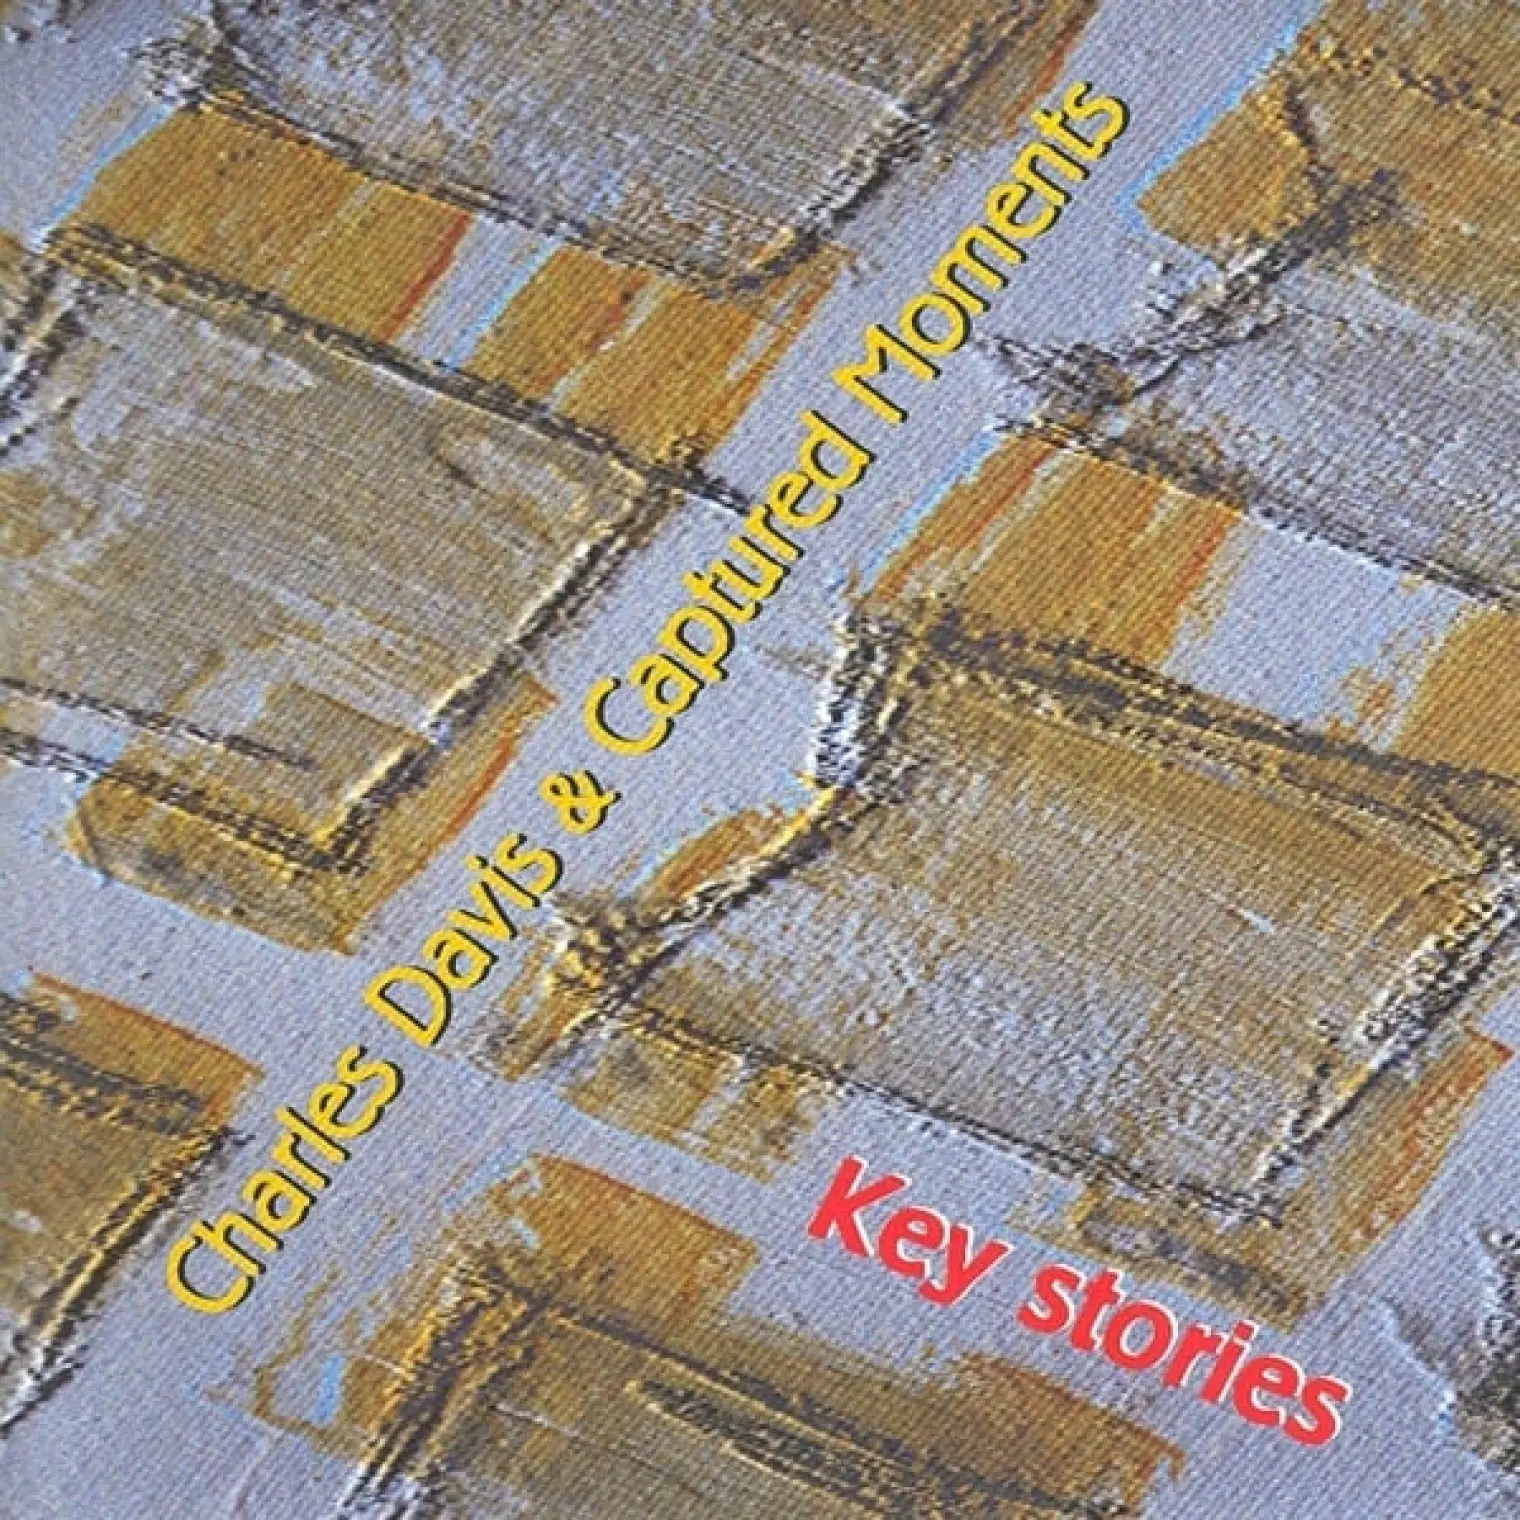 Key Stories -  Charles Davis 